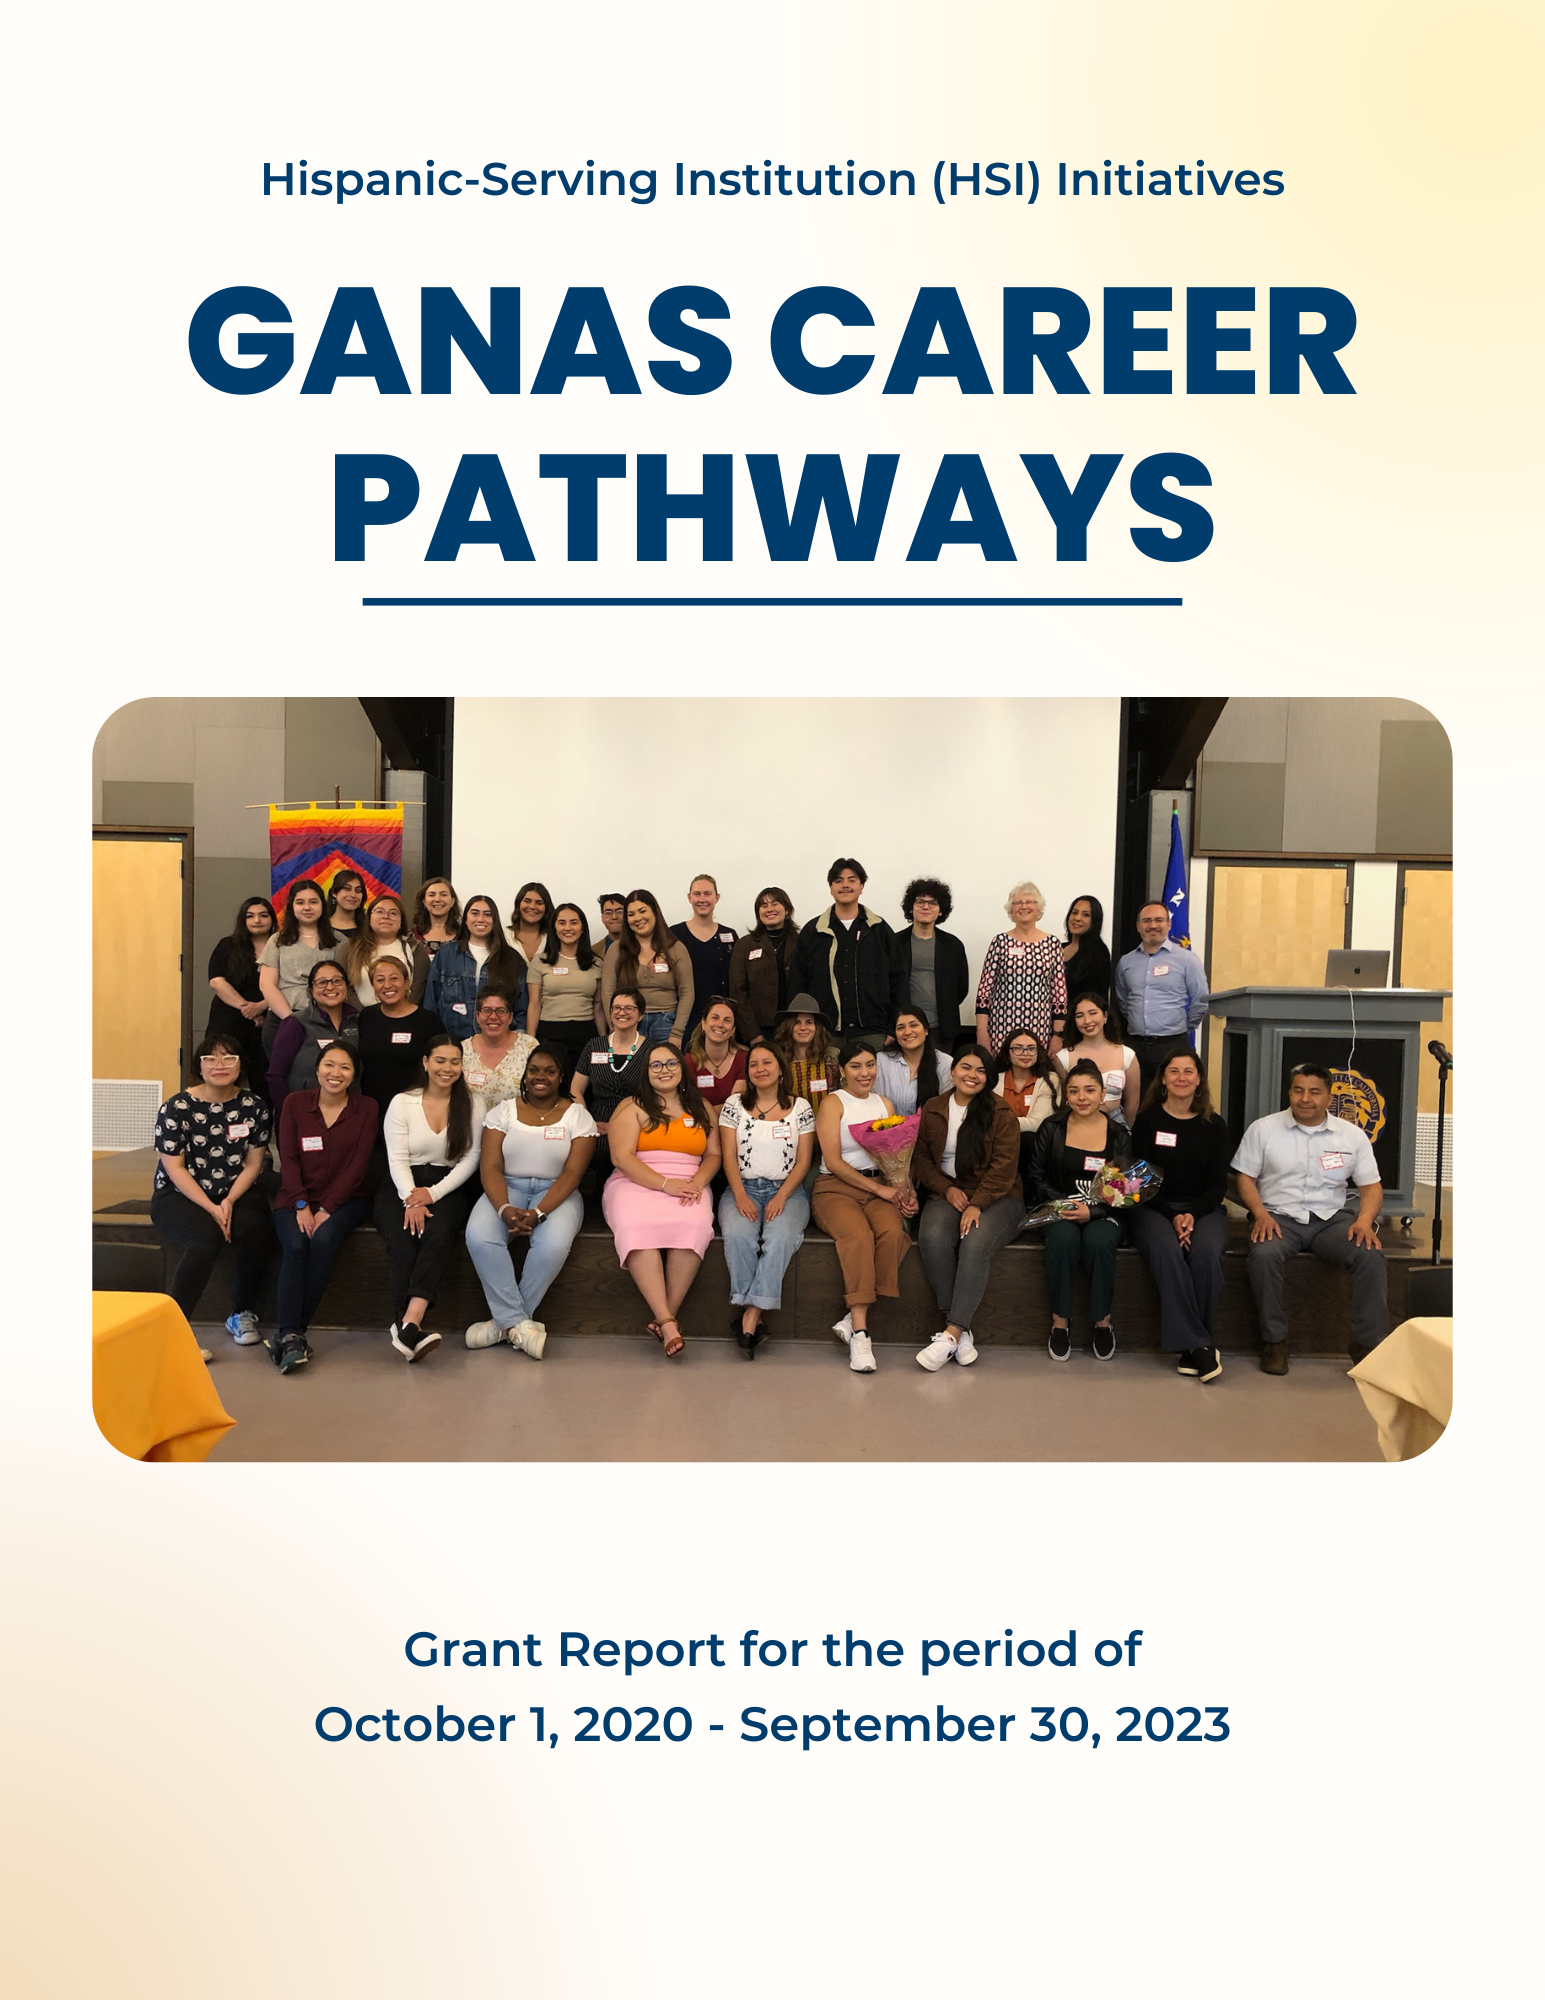 ganas-career-3-year-report.png